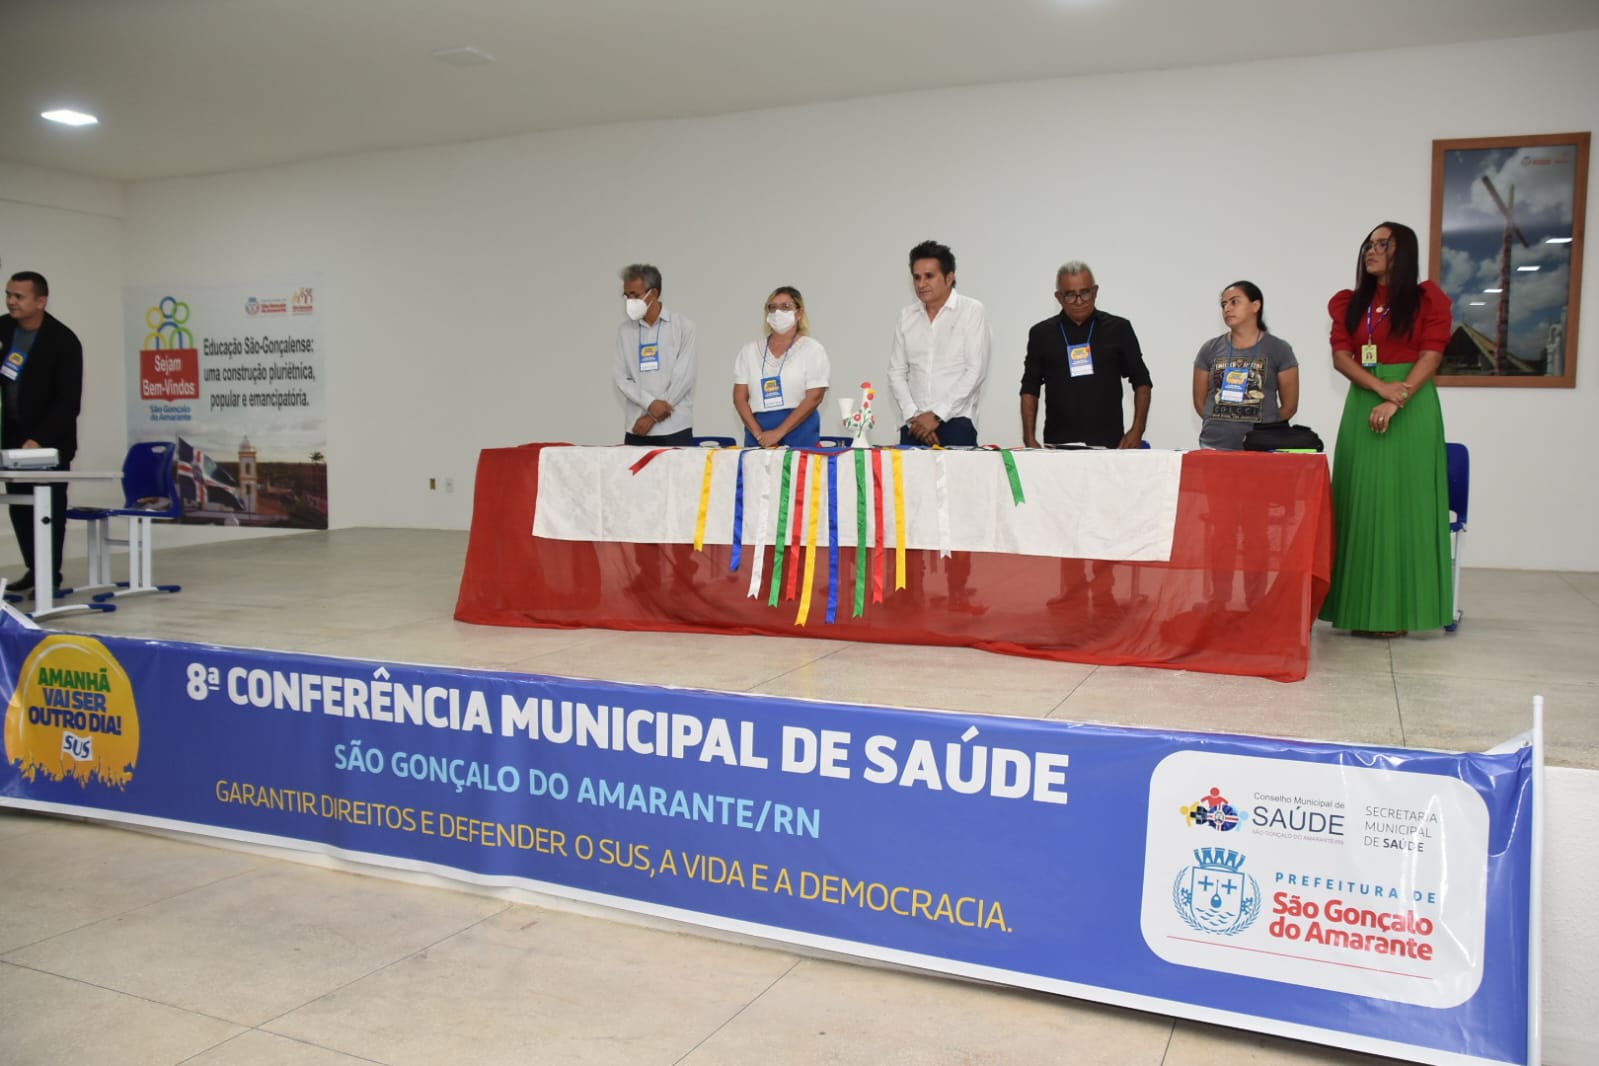 Prefeitura de São Gonçalo realiza 8ª Conferência Municipal de Saúde